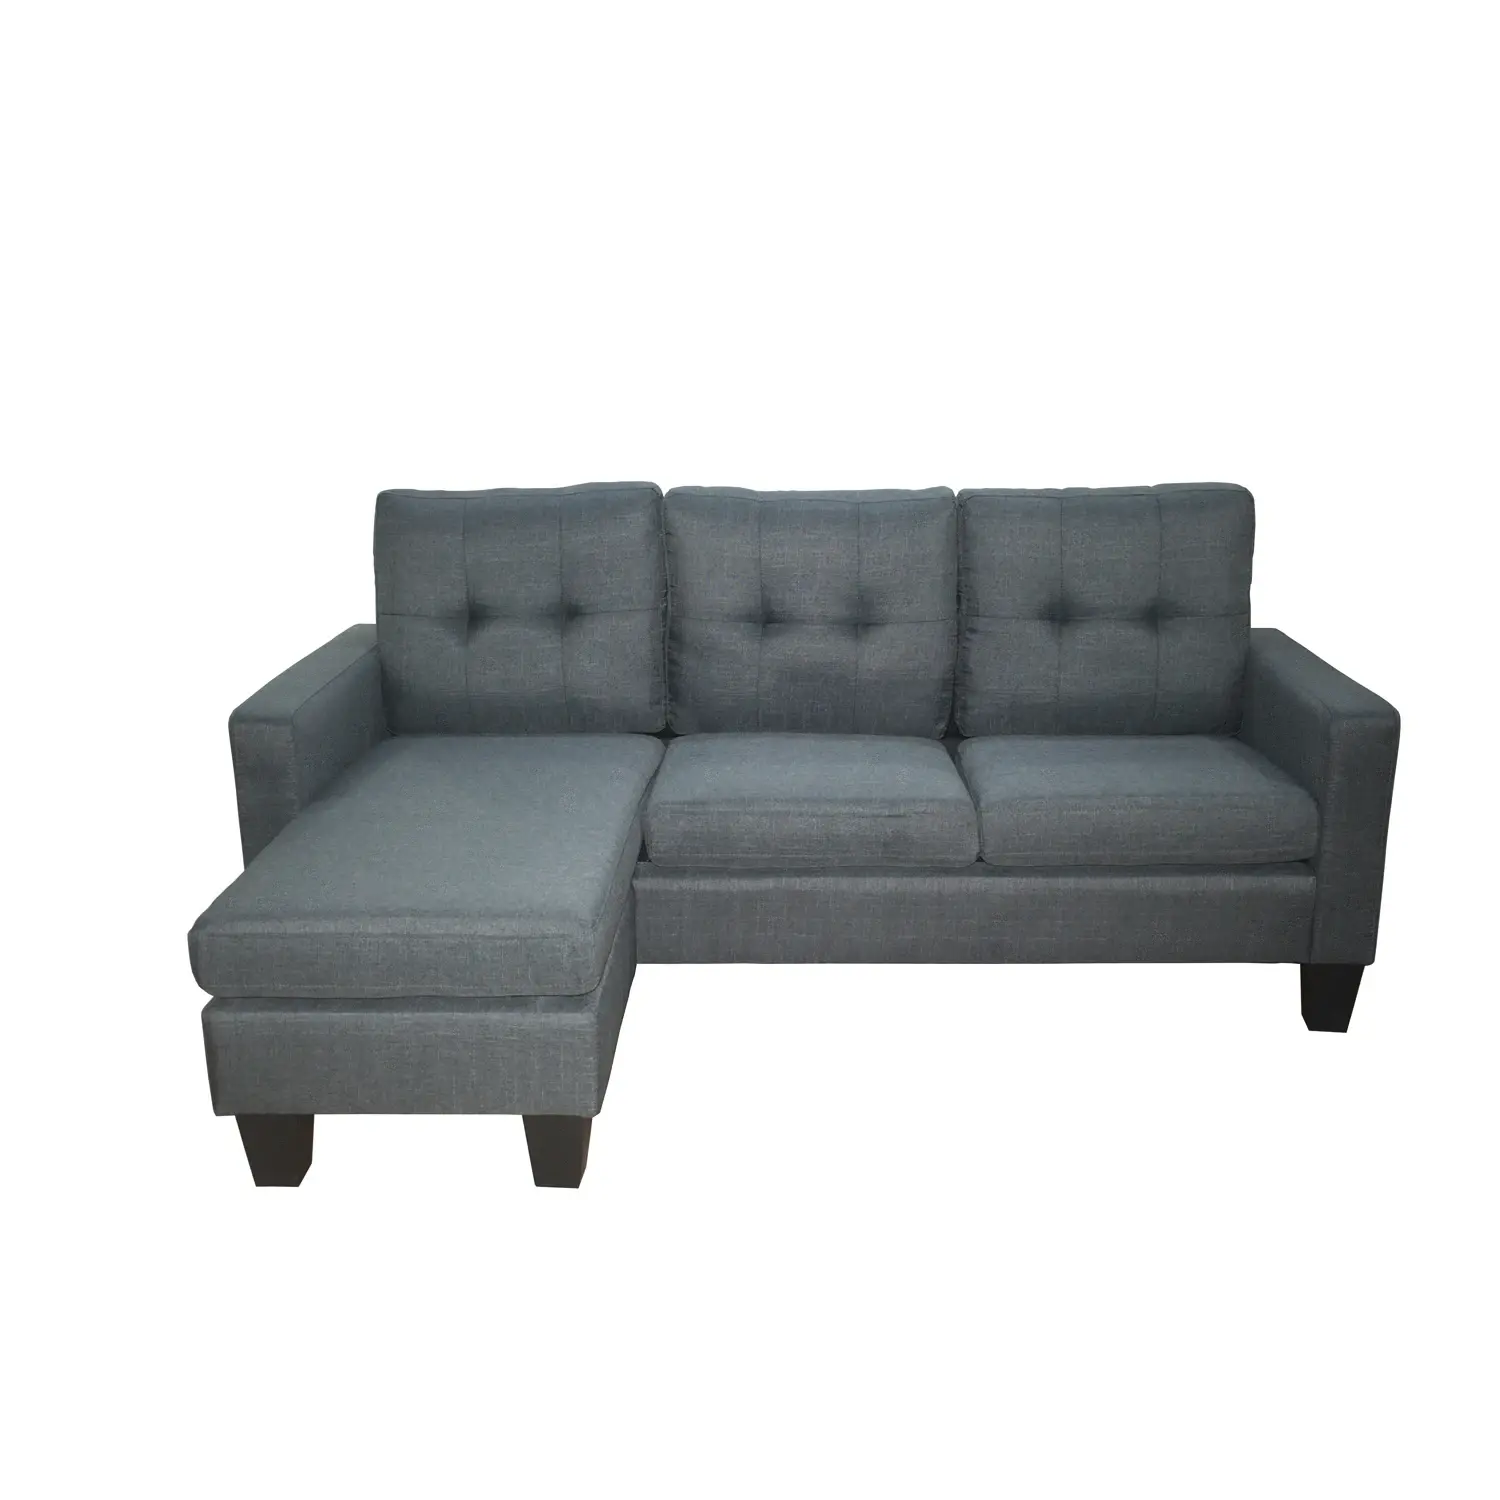 Set sofa sudut gaya panas, kursi sofa Harga kompetitif mebel ruang tamu